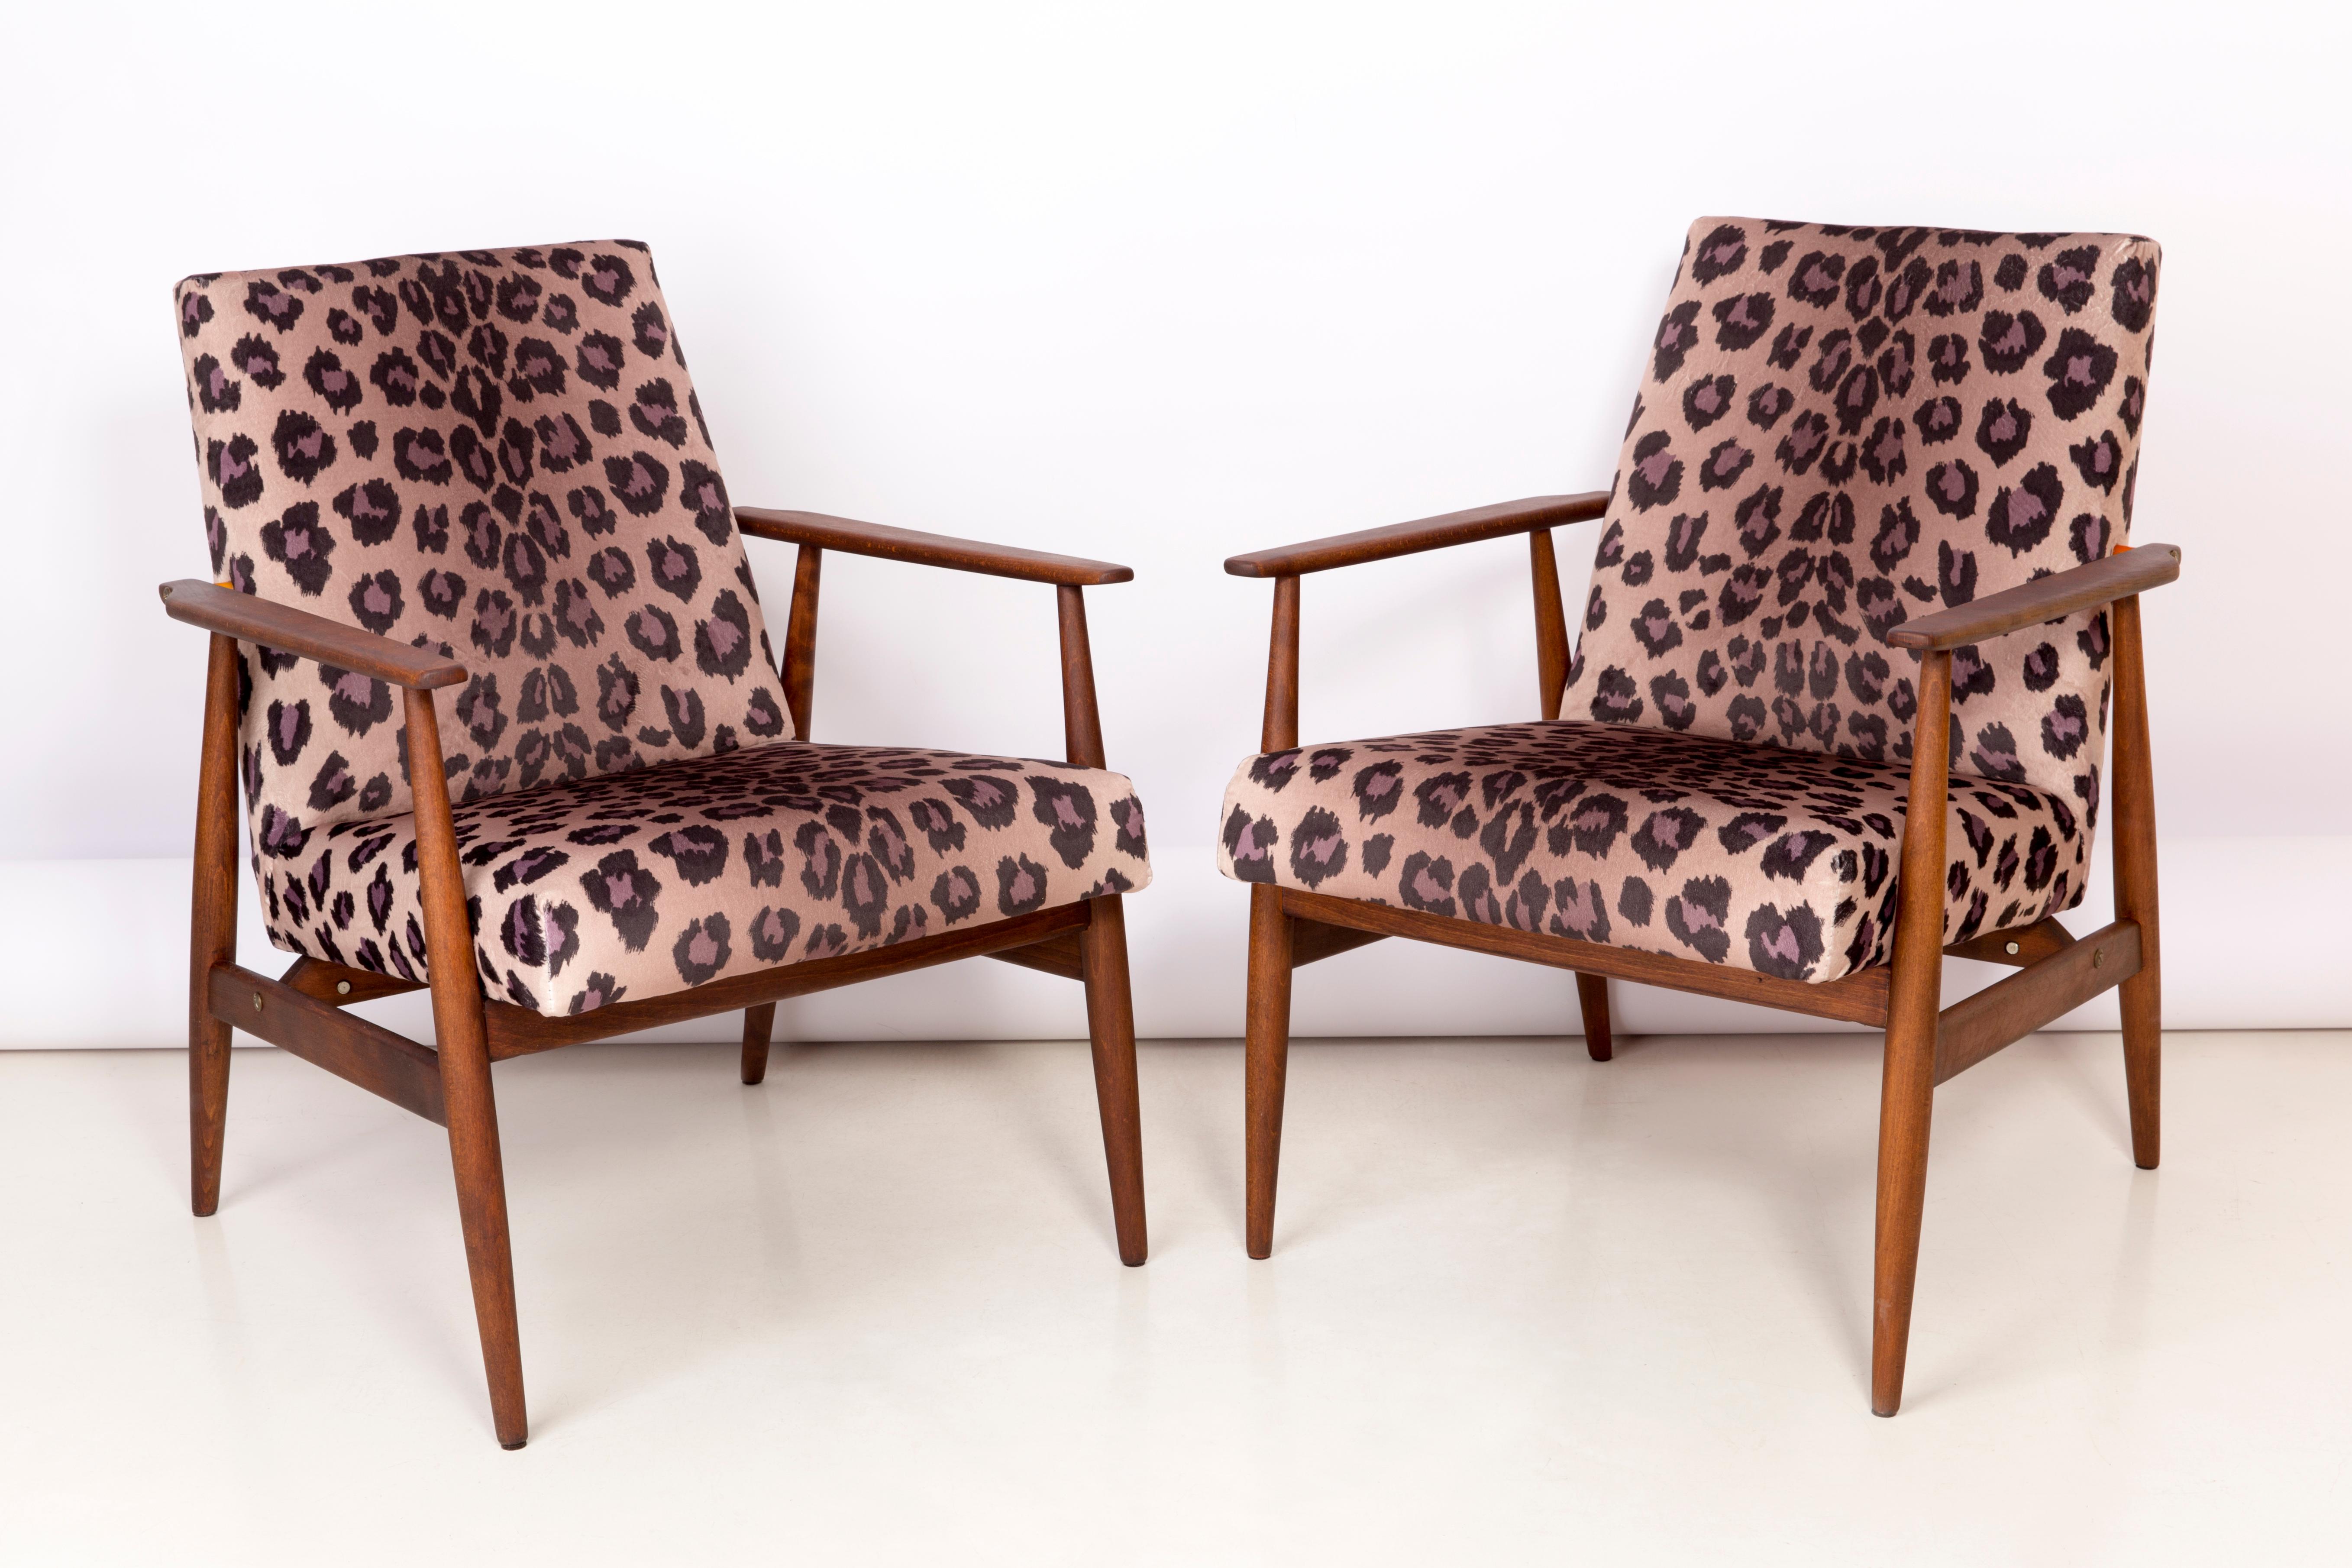 Un beau fauteuil restauré, conçu par Henryk Lis. Meubles après une rénovation complète de la menuiserie et de la tapisserie. Le tissu, qui est recouvert d'un dossier et d'une assise, est un revêtement en velours italien de haute qualité imprimé en